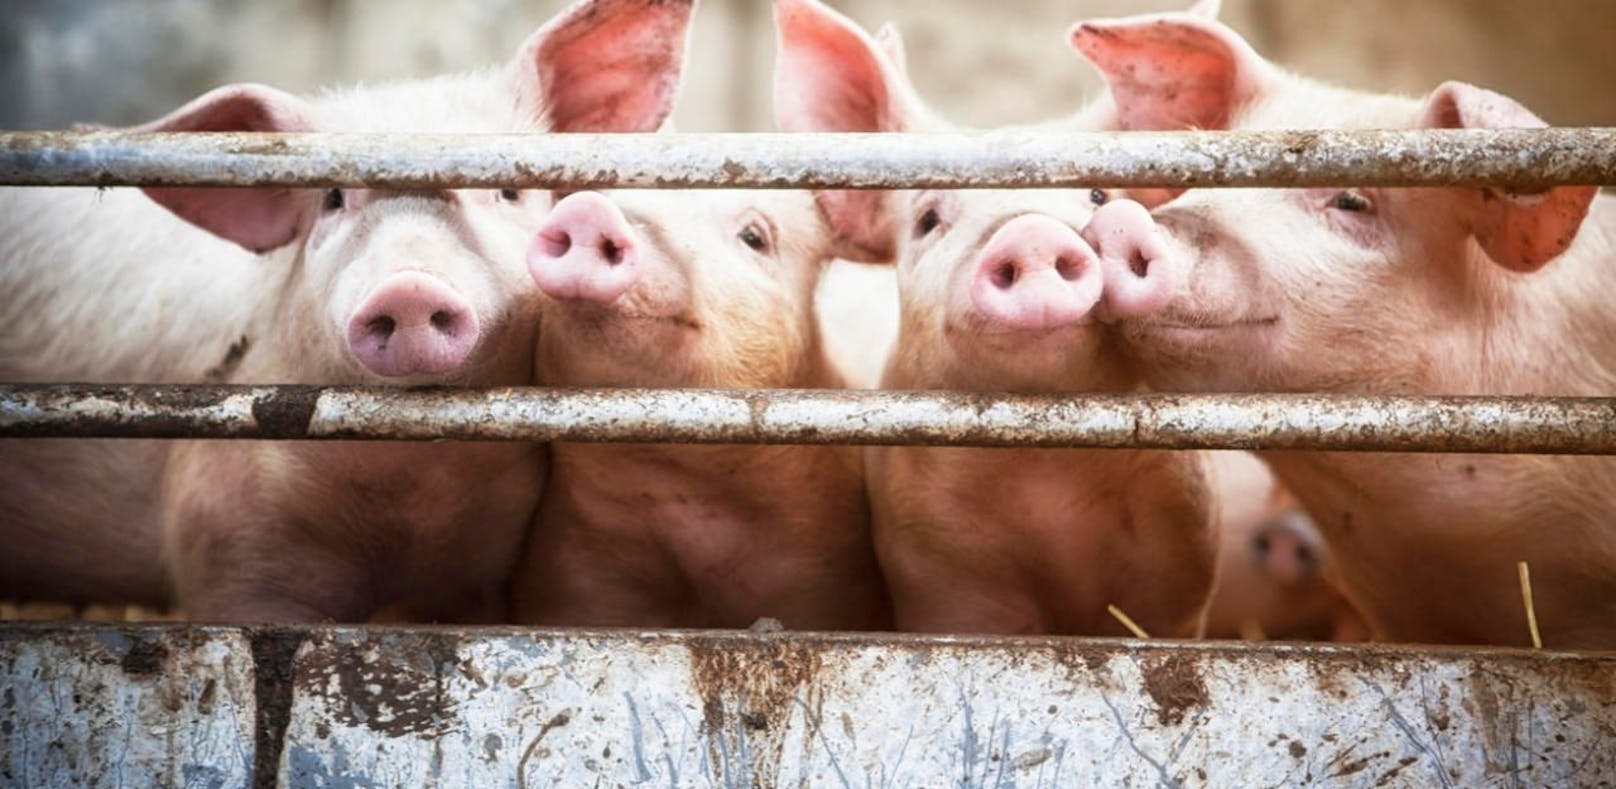 Einem steirischen Landwirten wurden zehn Schweine aus dem Stall gestohlen. (Symbolfoto)